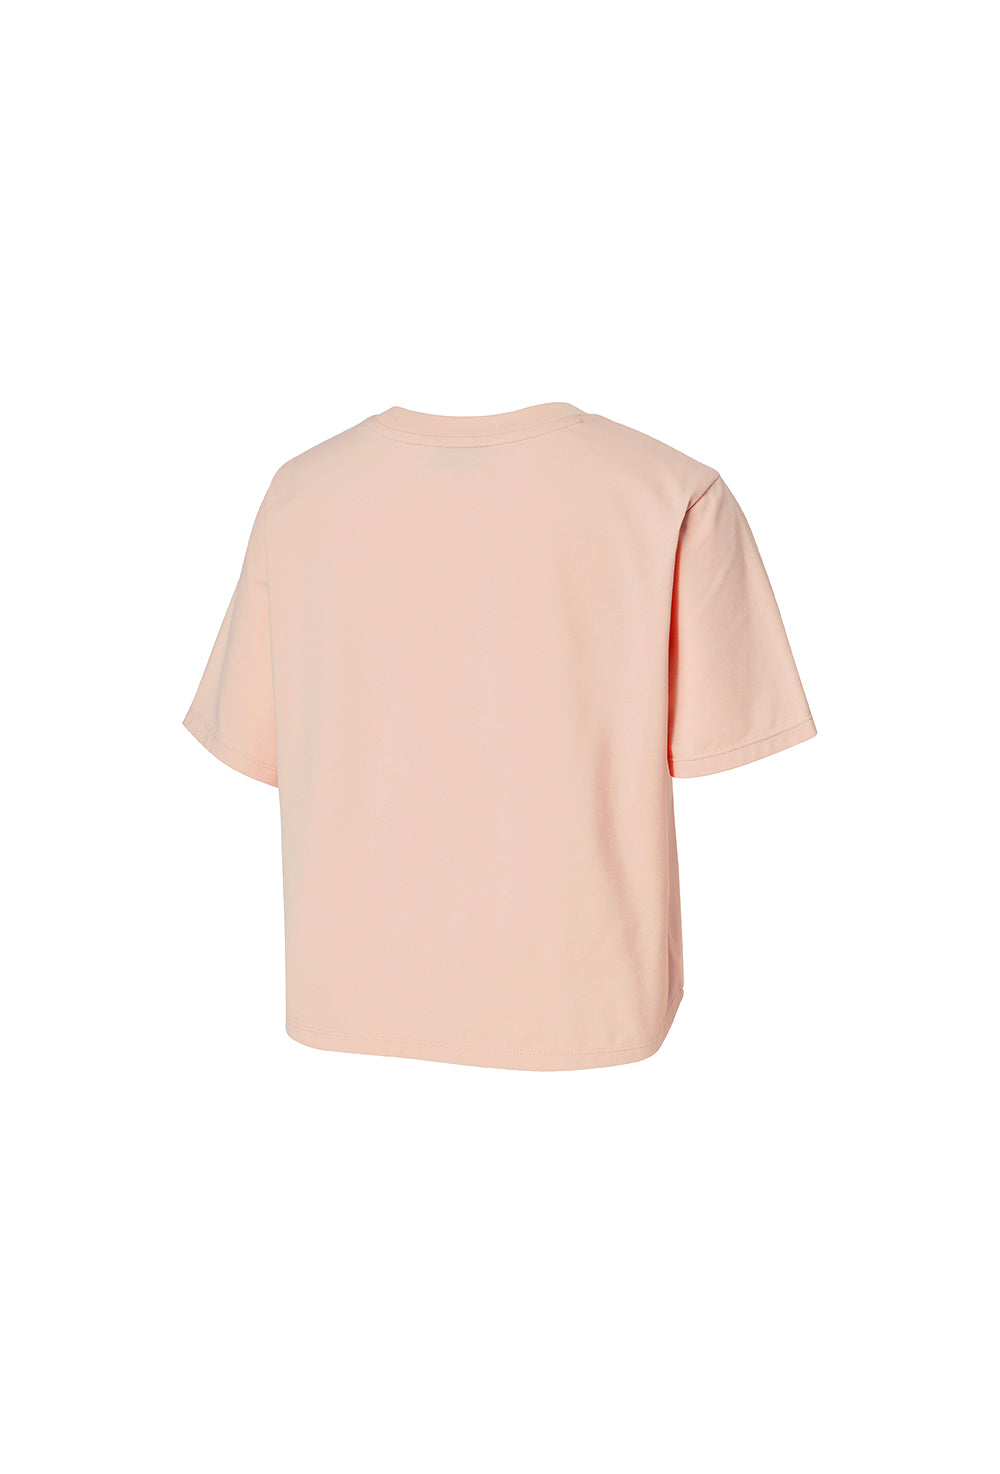 Basic Scratch Crop T-Shirt - Mist Pink